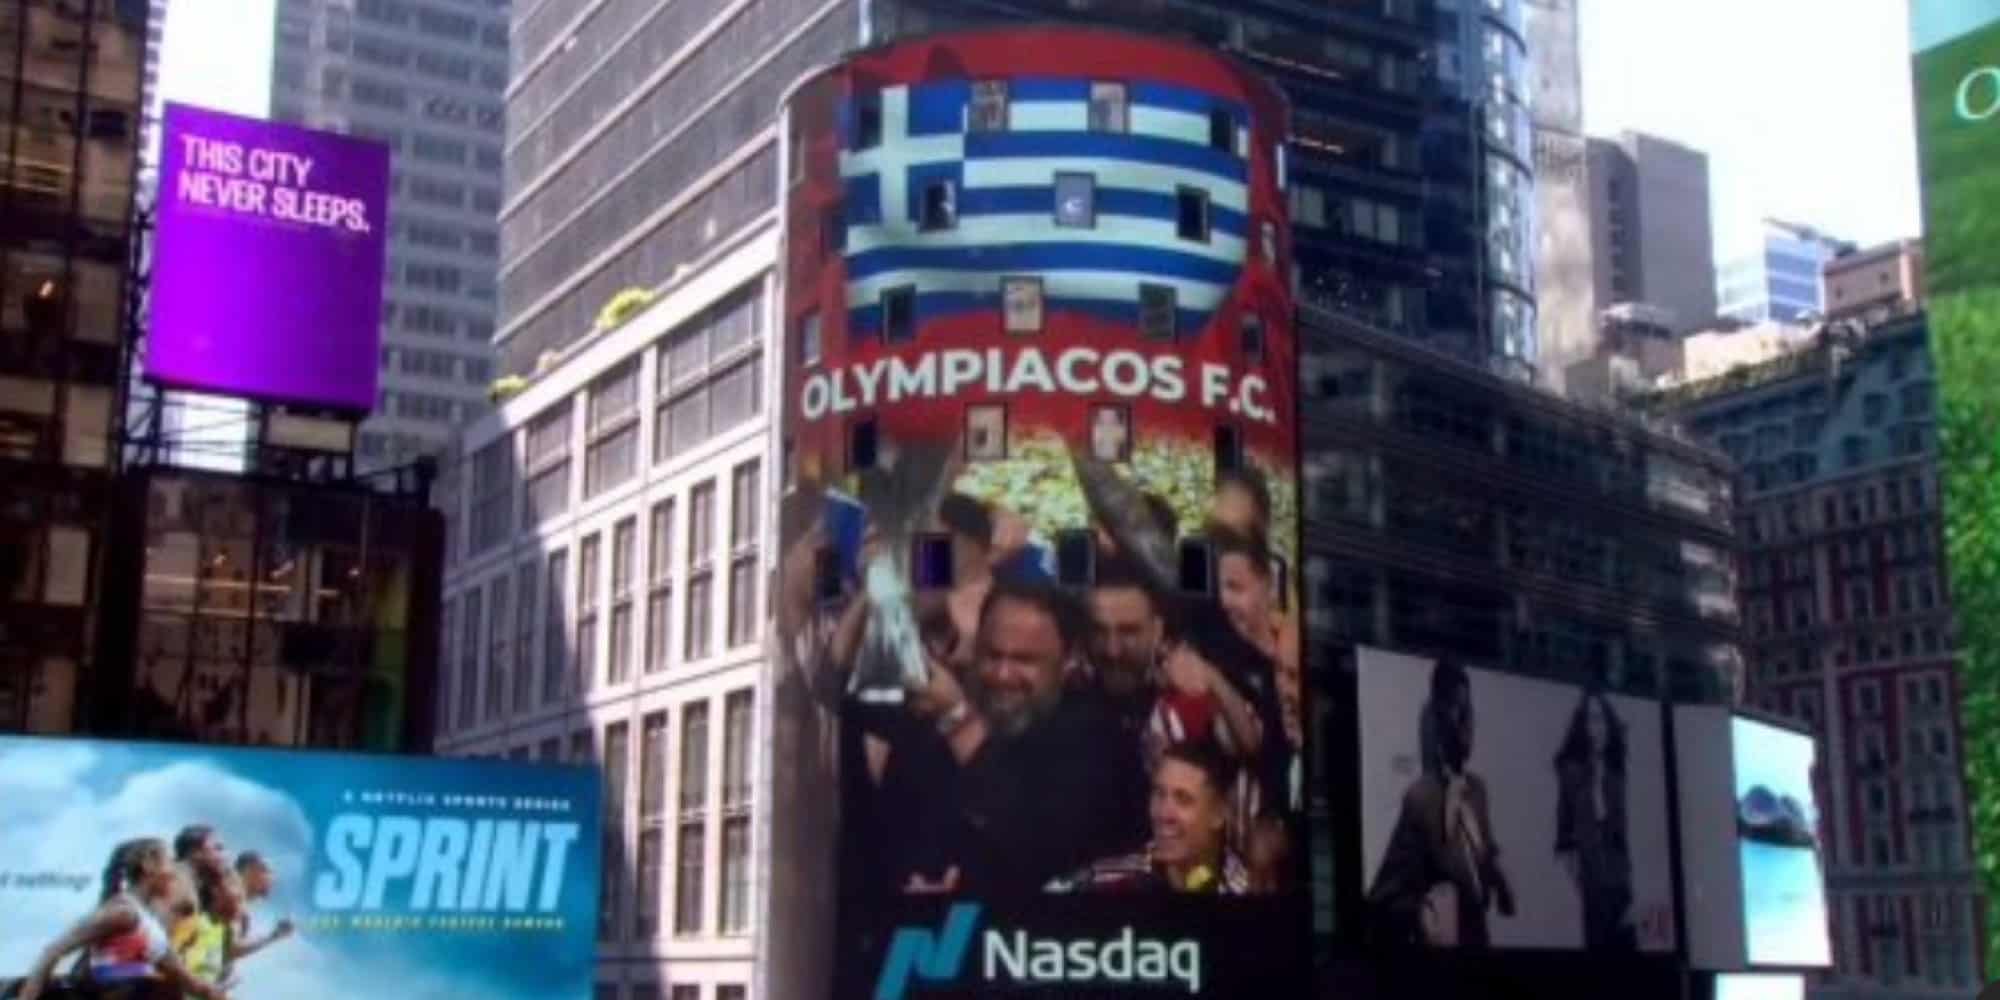 Ο Ολυμπιακός εμφανίστηκε στον πύργο του Nasdaq στην Times Square